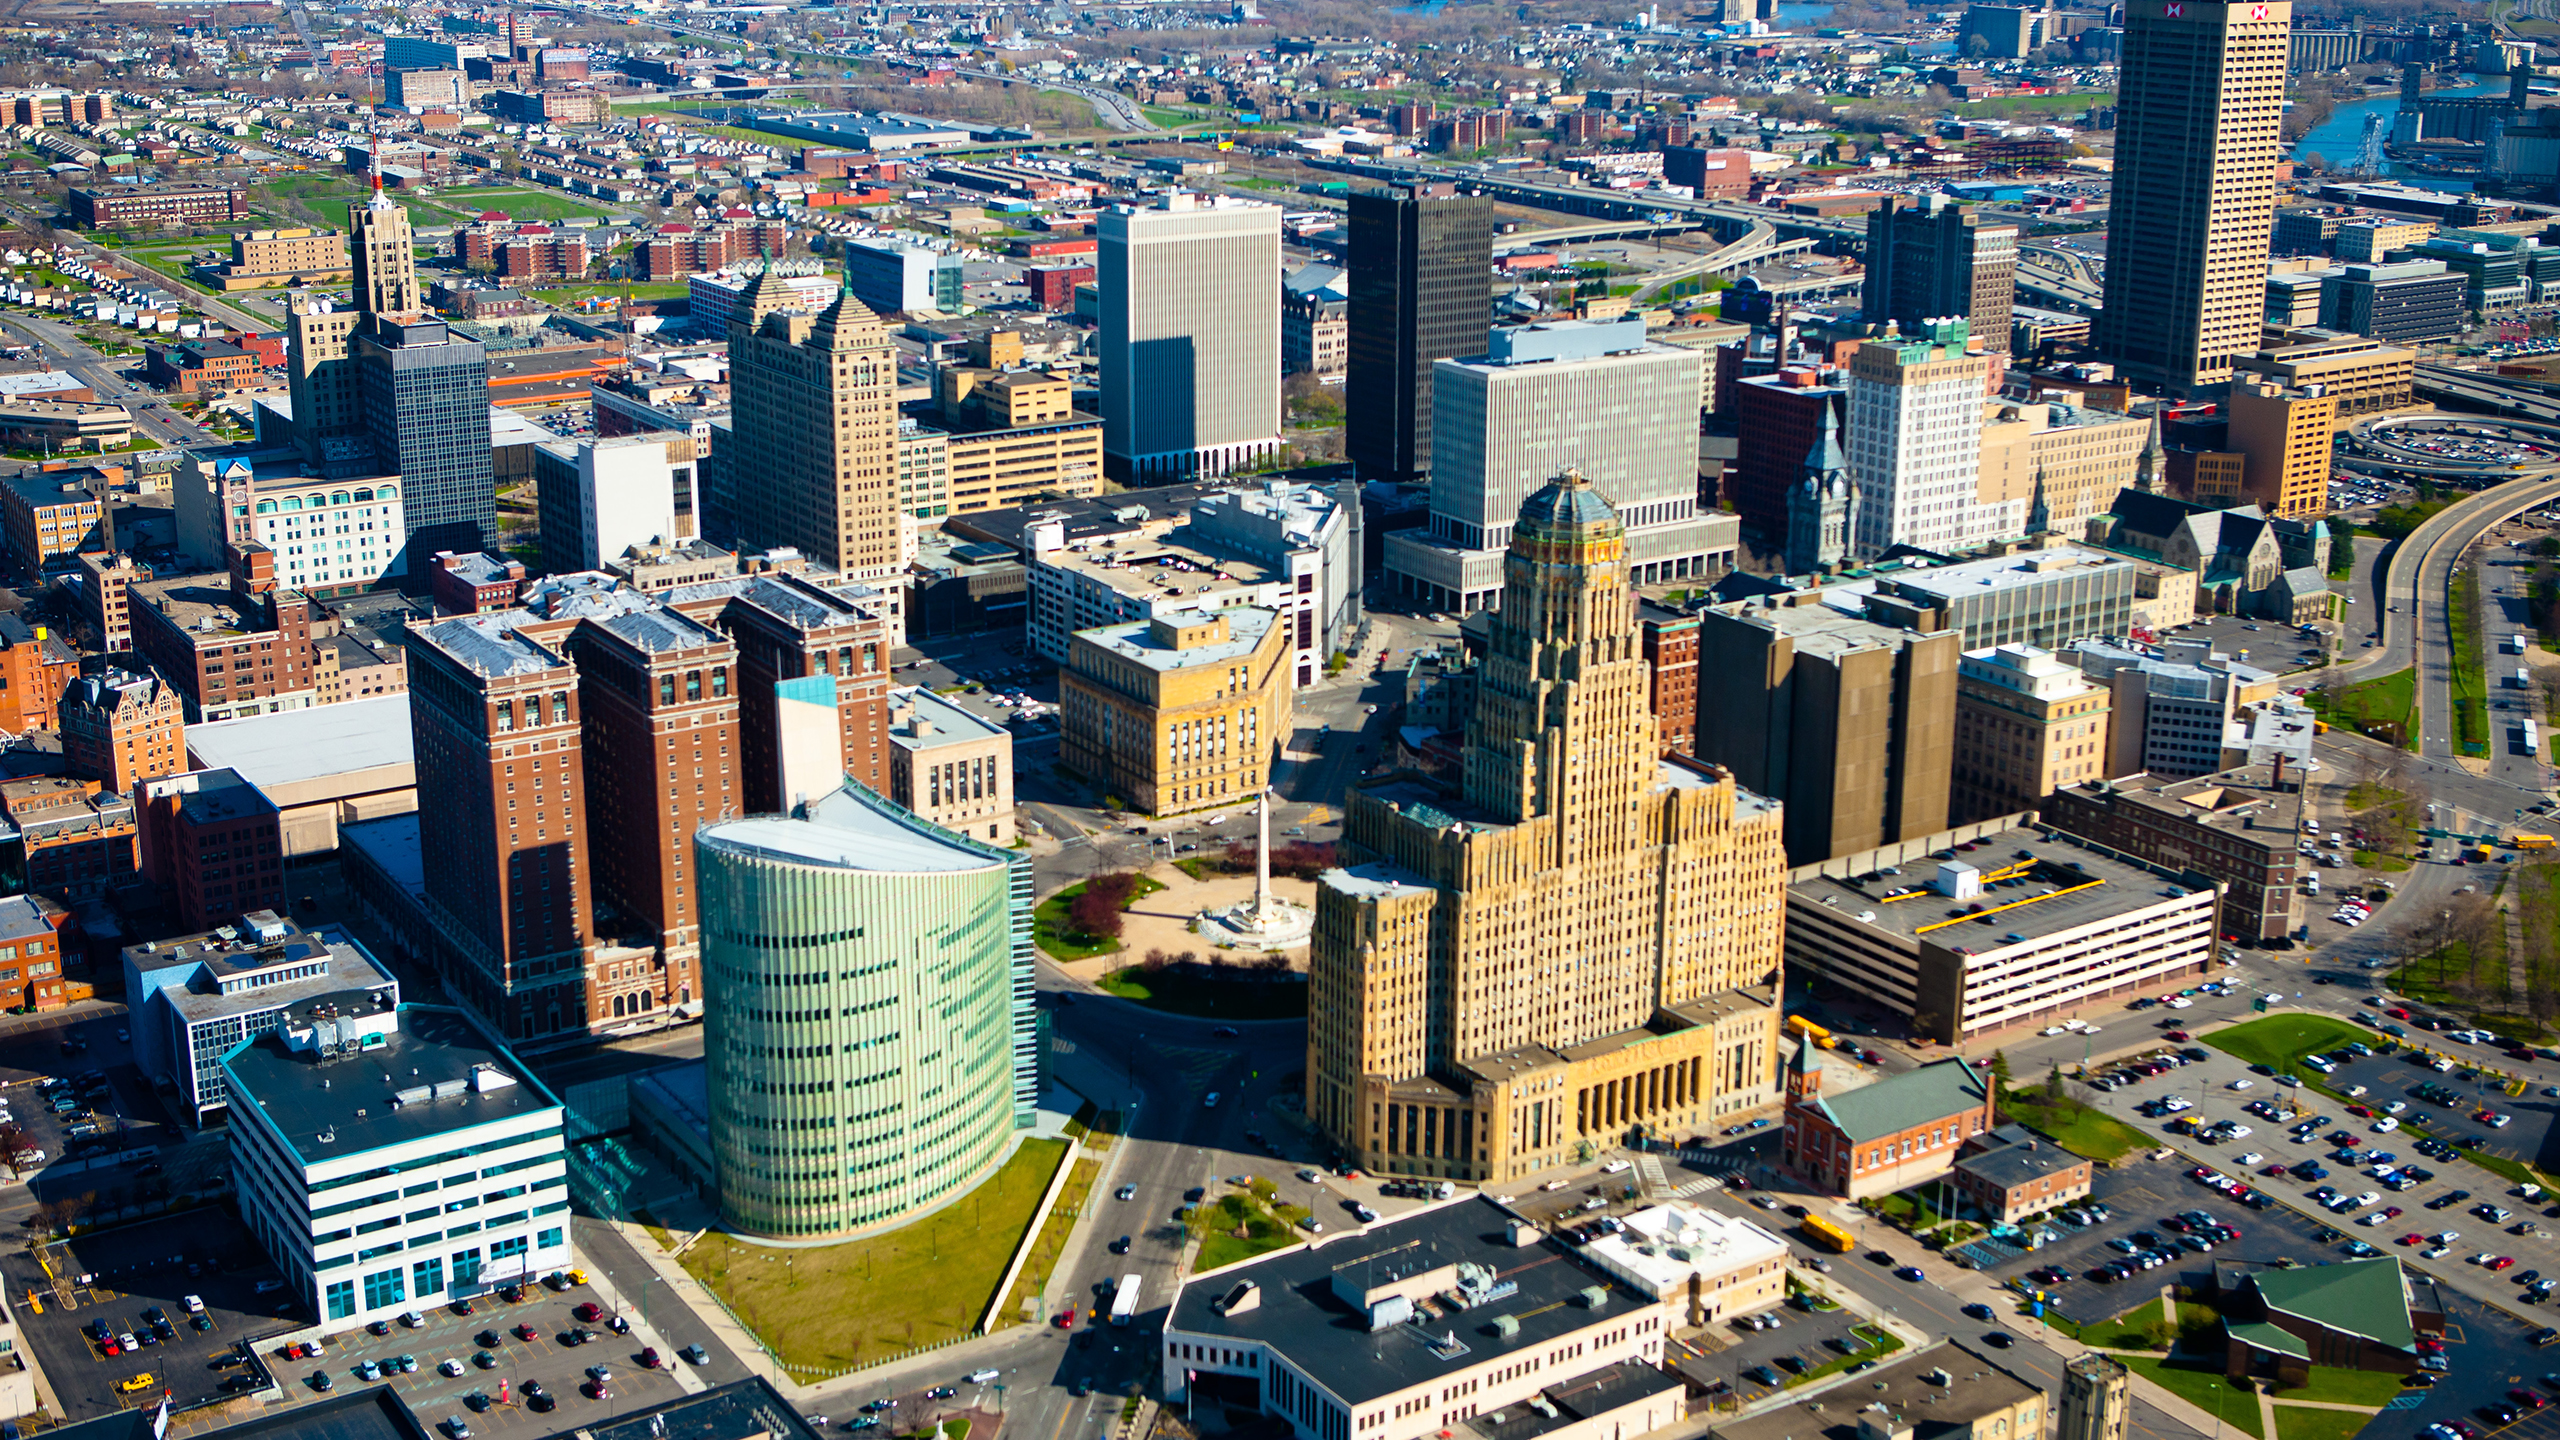 The City of Buffalo